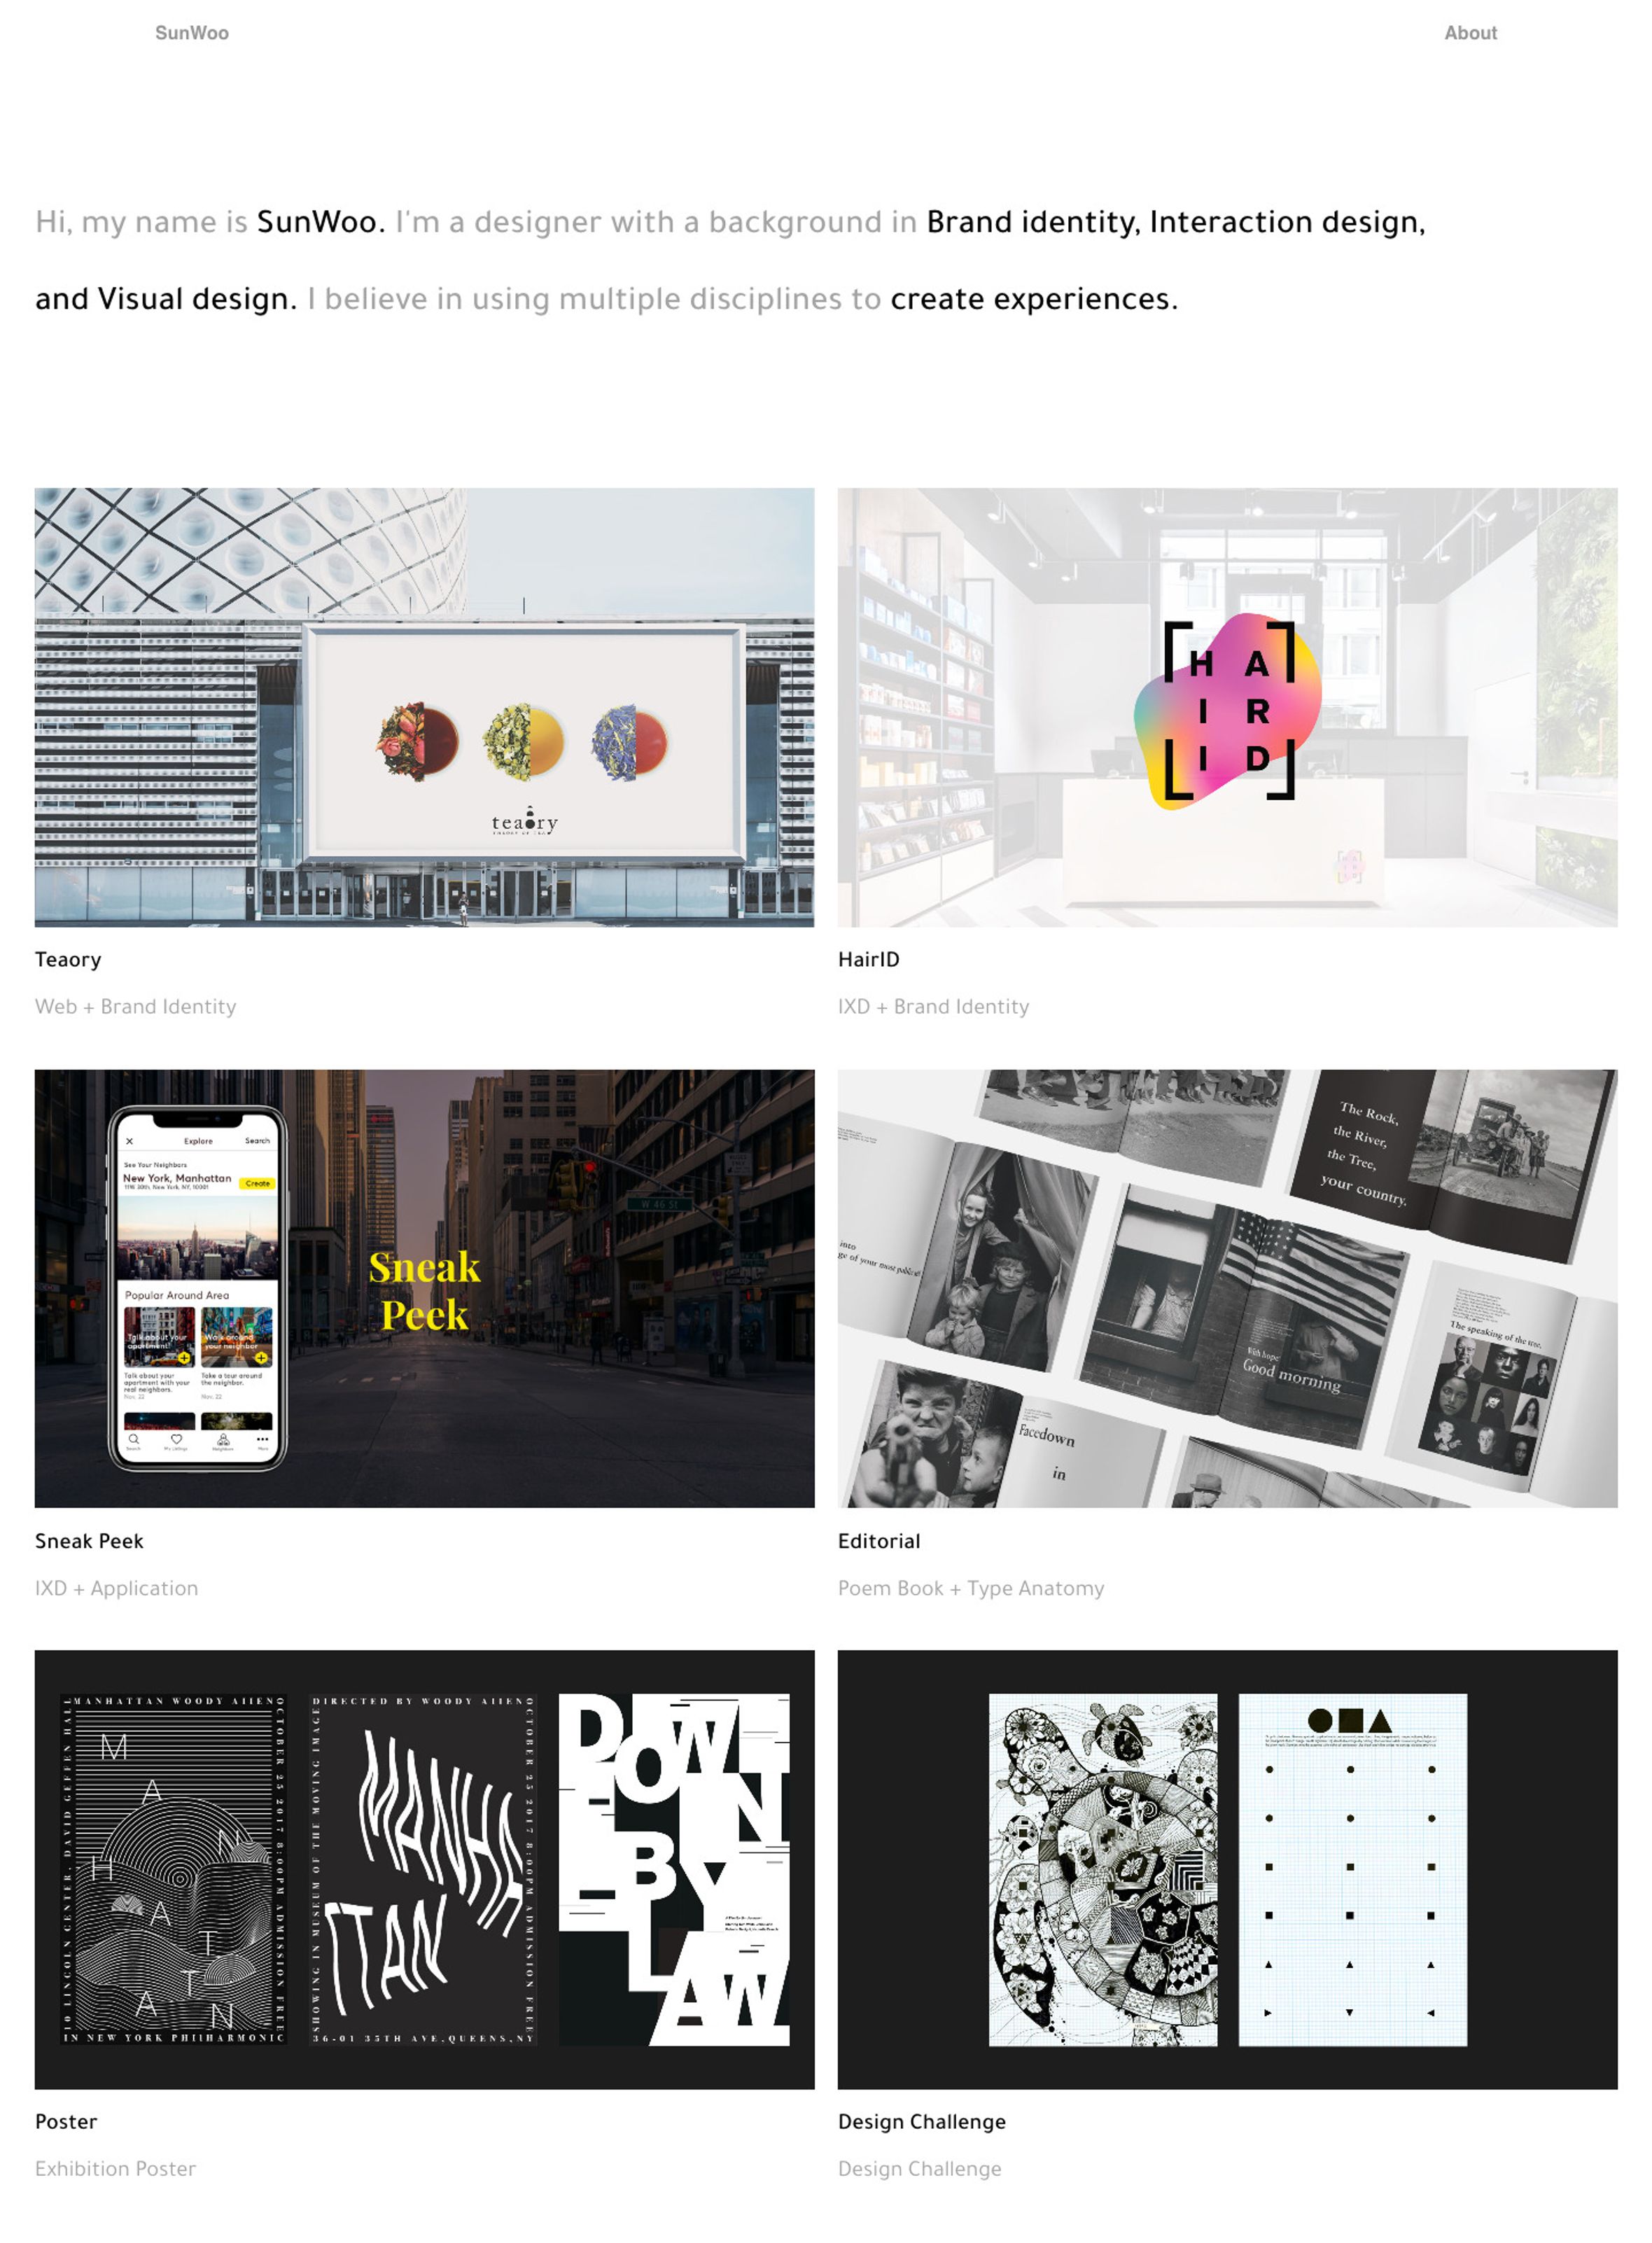 best graphic design portfolios